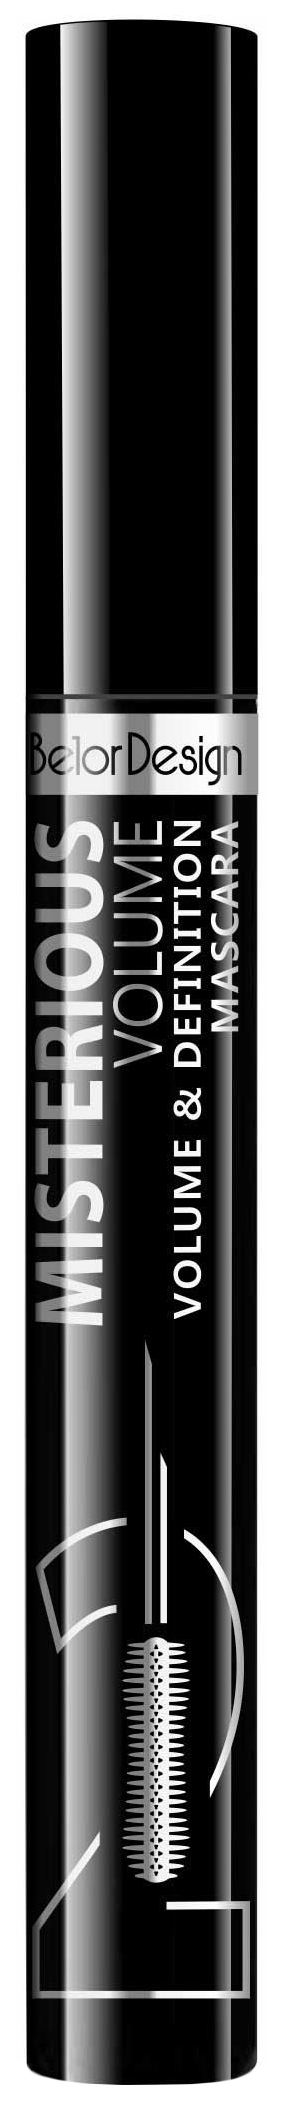 Тушь для ресниц Belor Design Misterious Volume объёмная, разделяющая, чёрная poeteq тушь супер объем super volume mascara